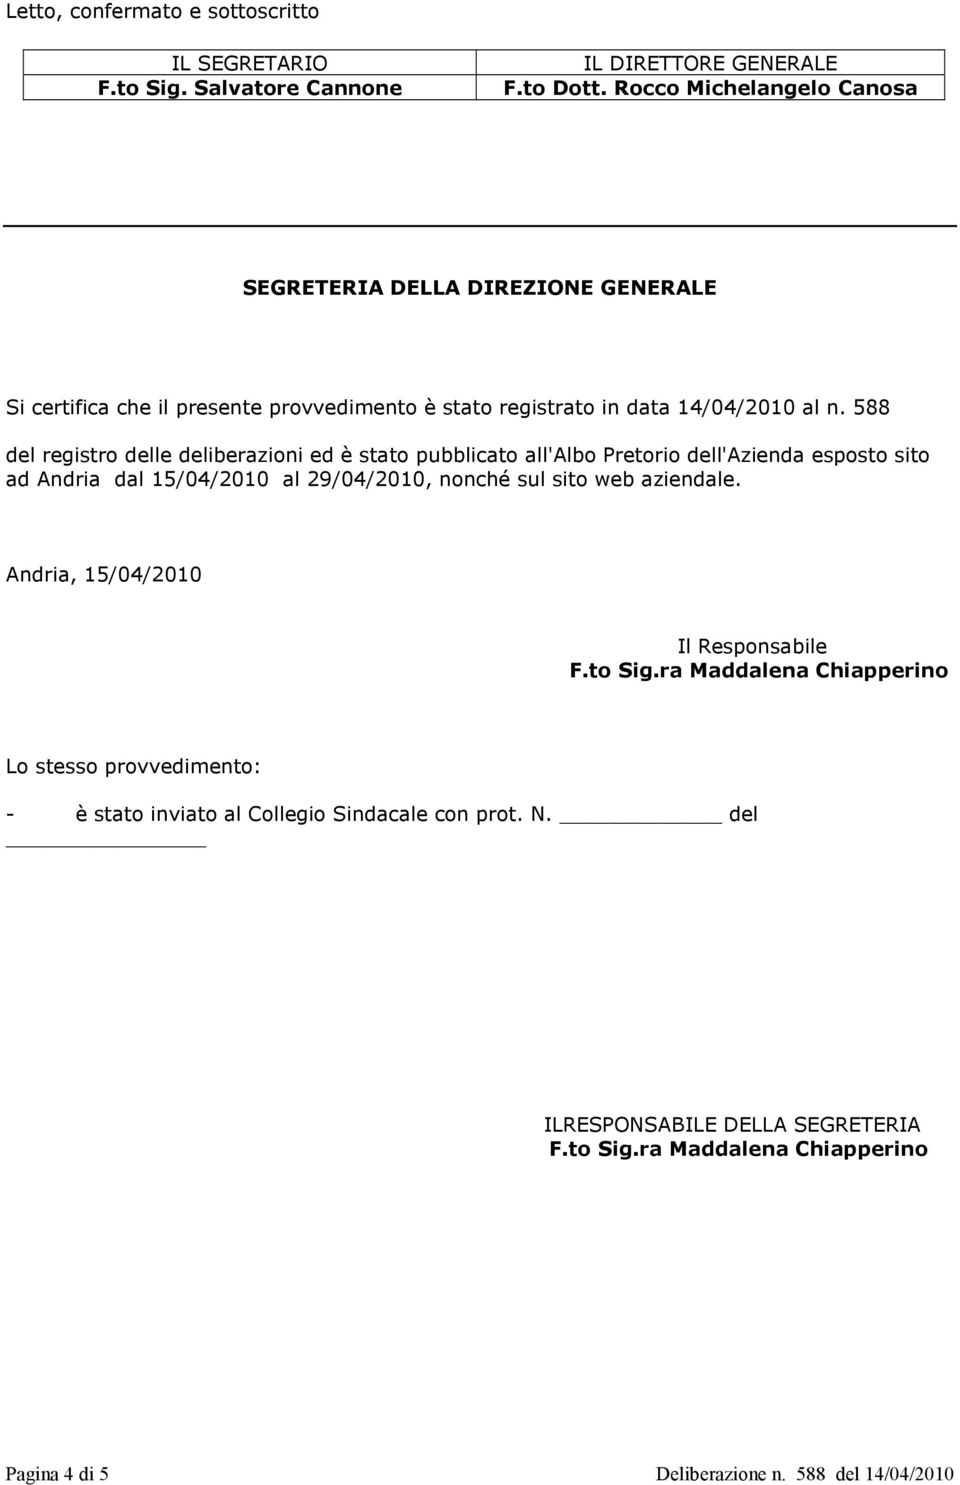 588 del registro delle deliberazioni ed è stato pubblicato all'albo Pretorio dell'azienda esposto sito ad Andria dal 15/04/2010 al 29/04/2010, nonché sul sito web aziendale.